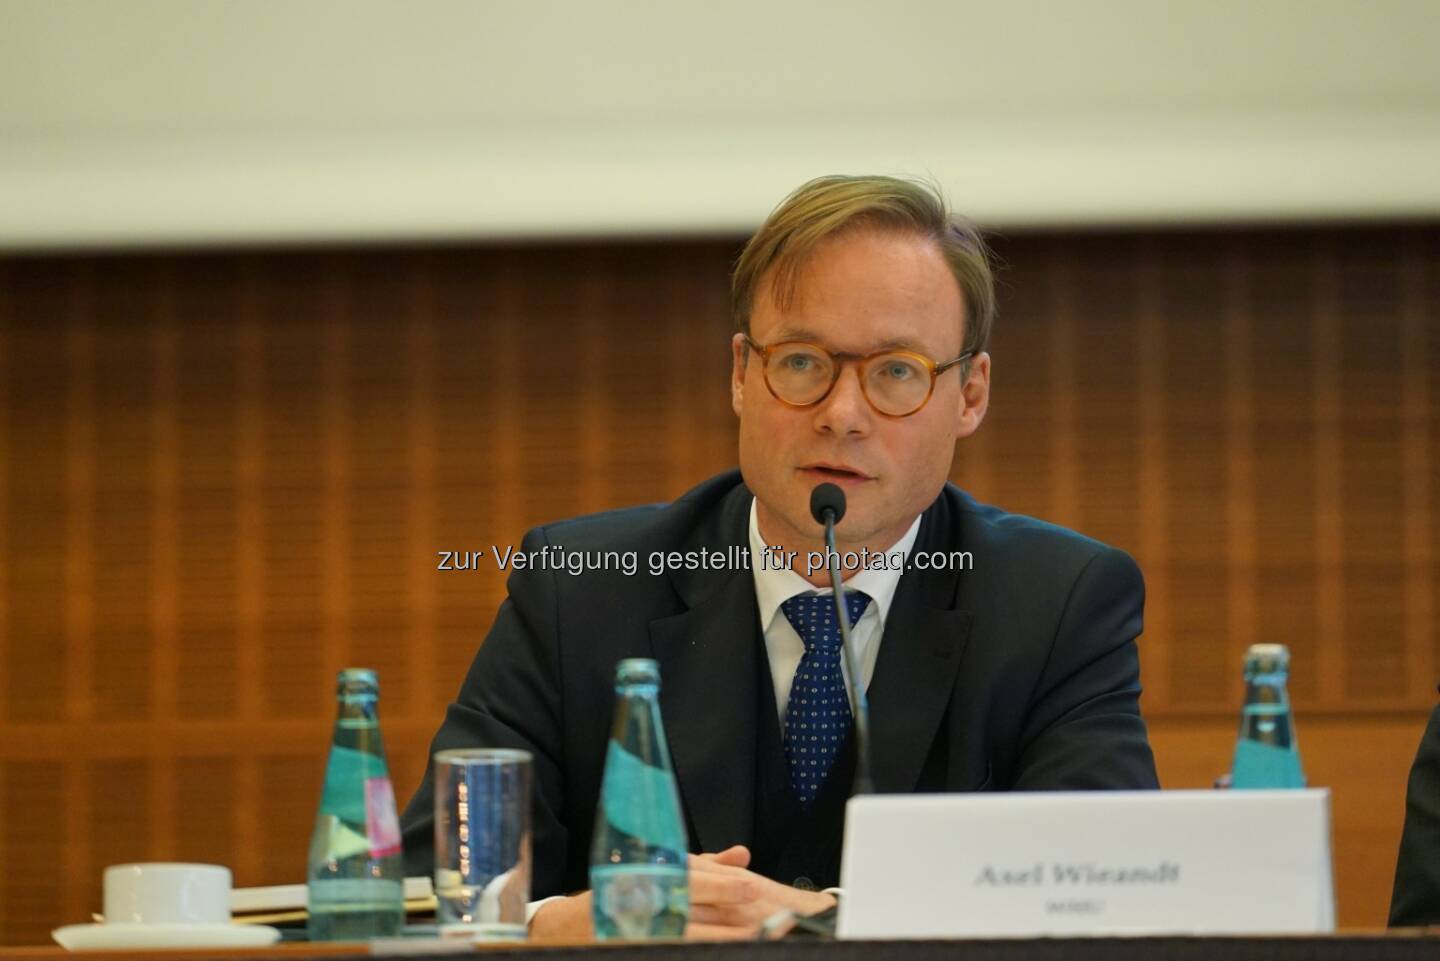 Axel Wieandt wird neues Beiratsmitglied bei der Forderungsbörse Debitos : Fotocredit: SAFE/HoF